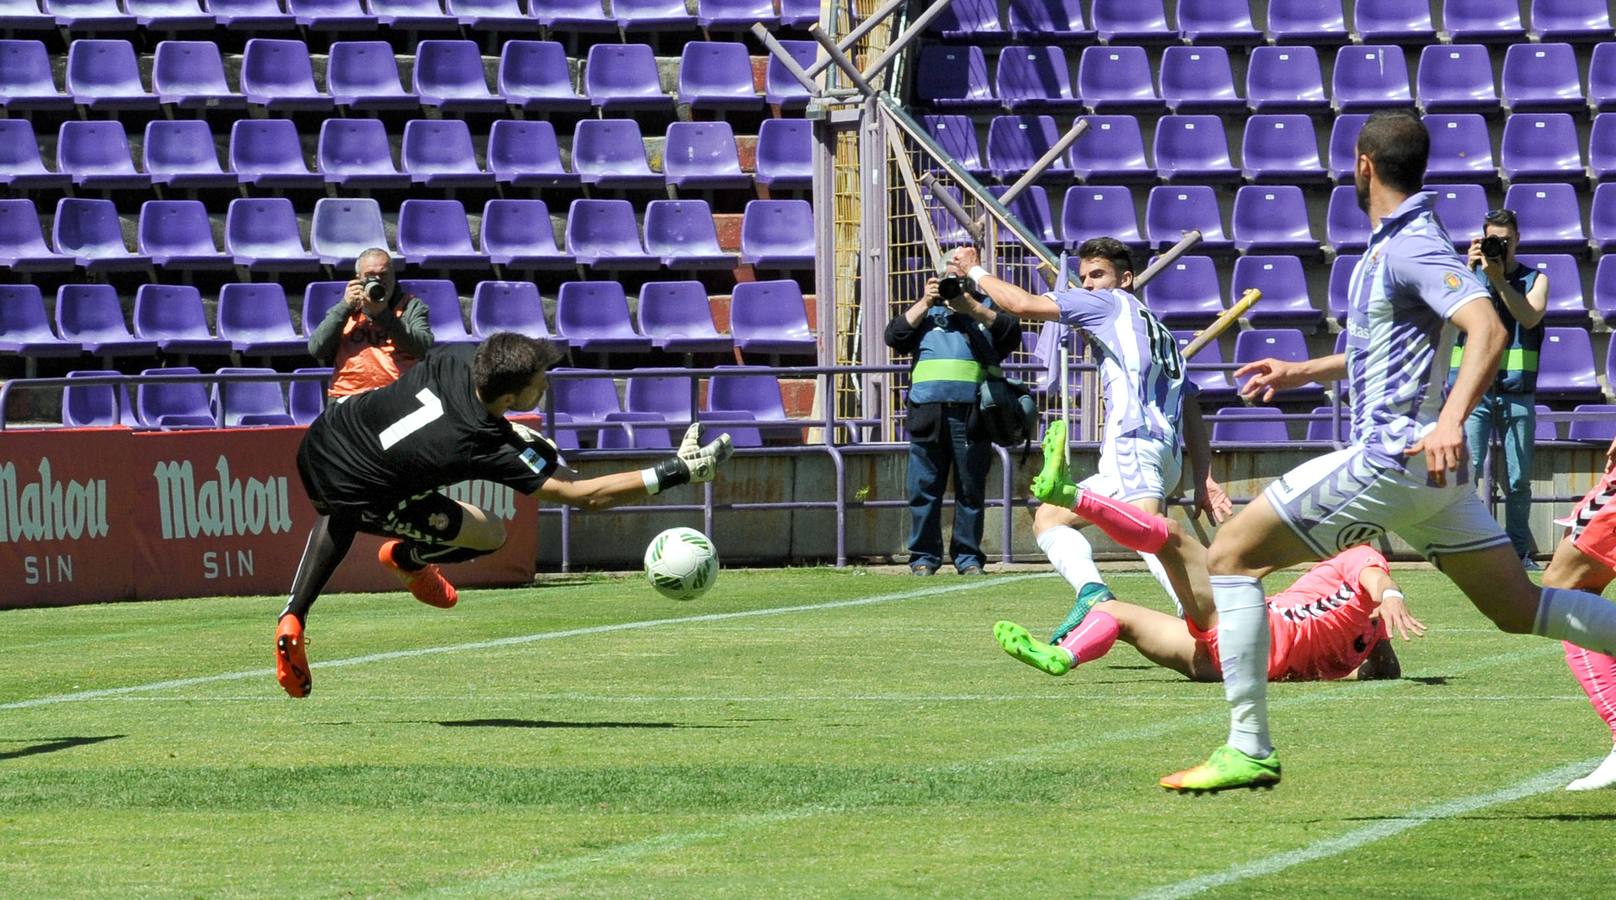 El Real Valladolid B pierde ante la Cultural Leonesa (1-4)